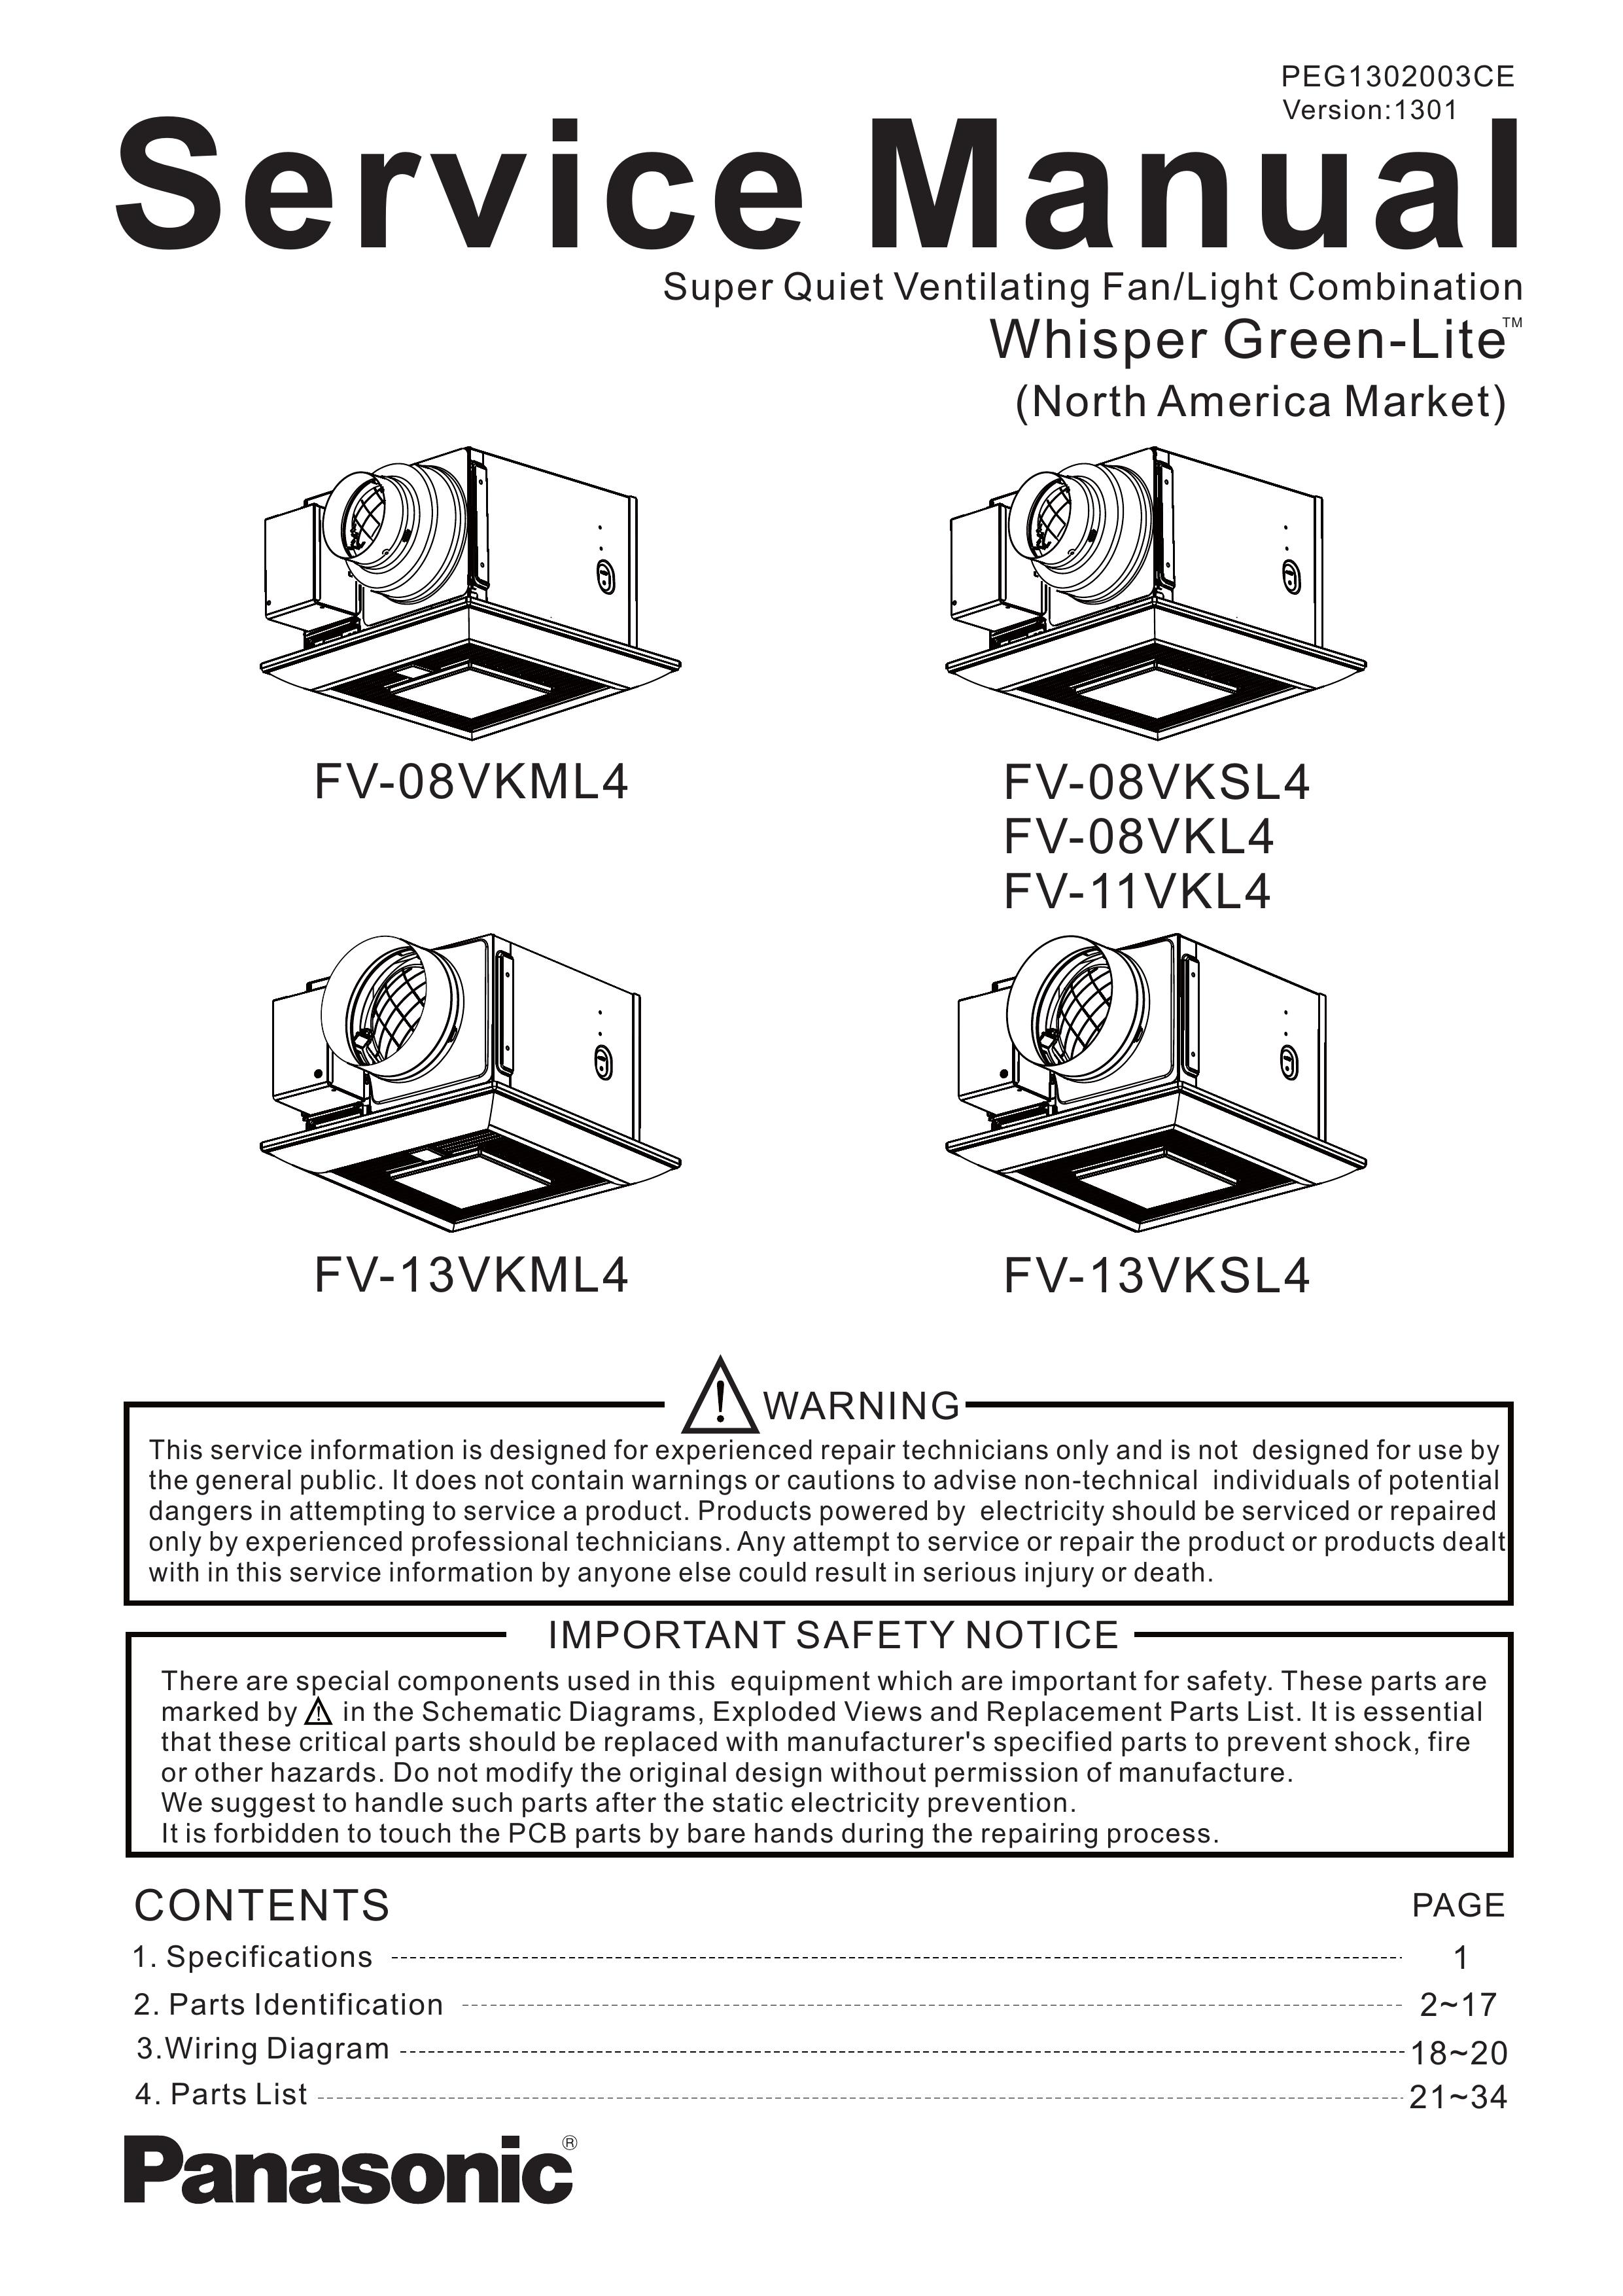 Panasonic FV-08VKSL4 Ventilation Hood User Manual